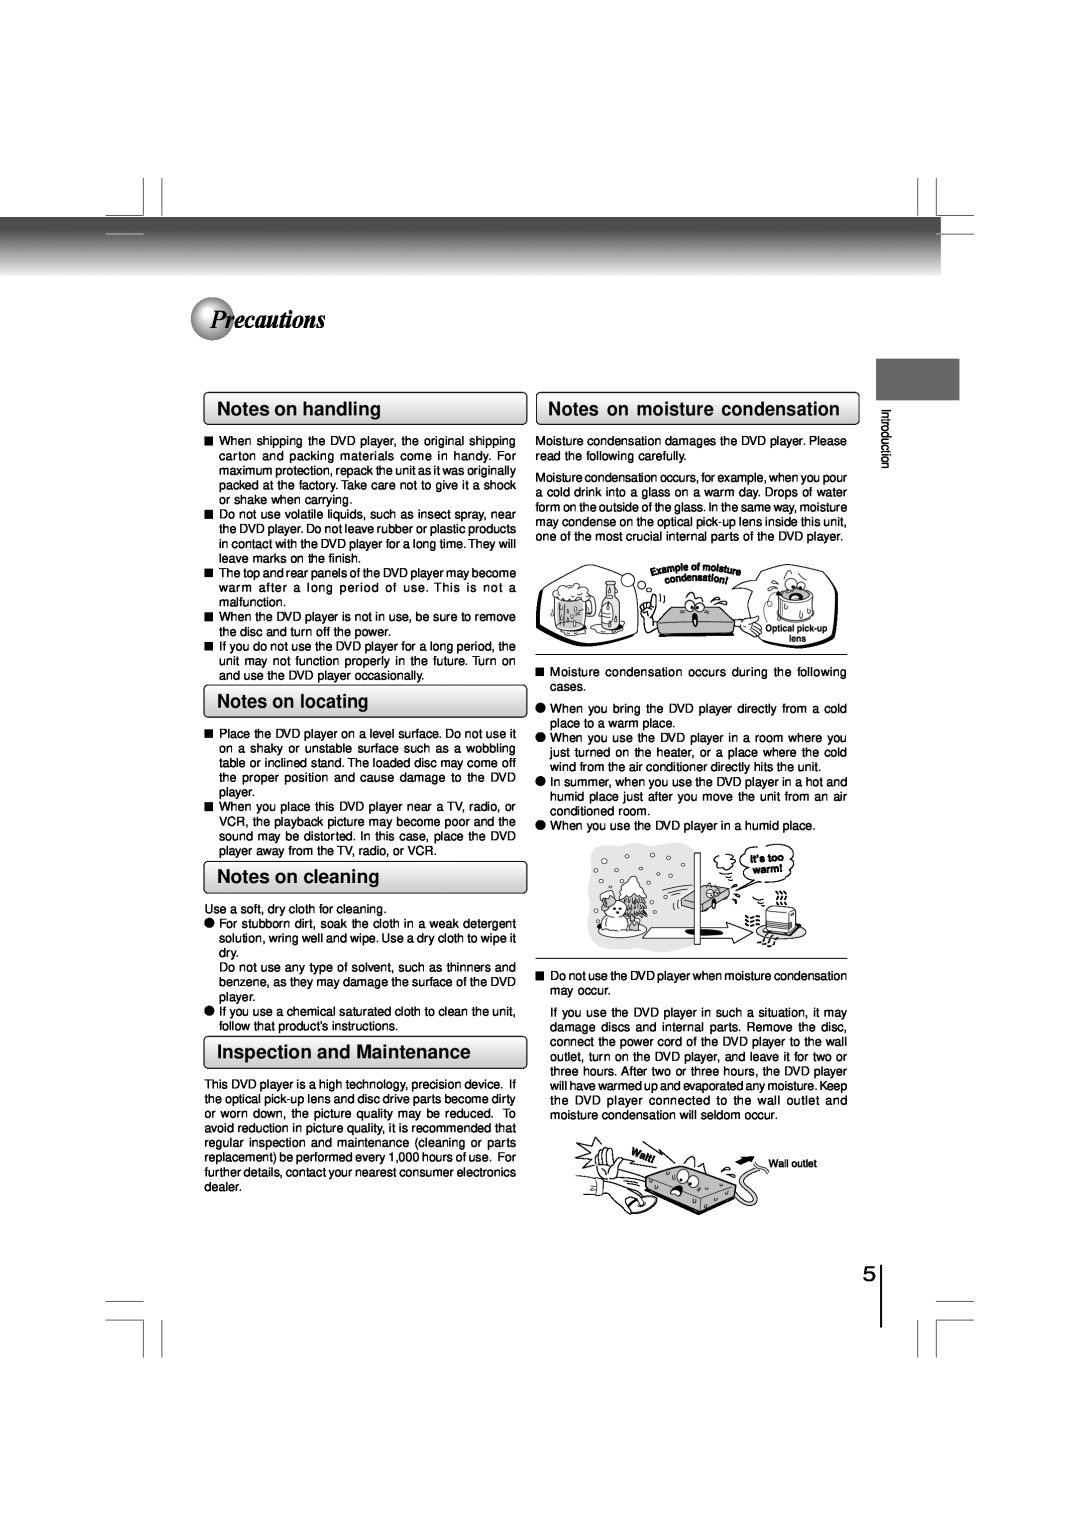 Toshiba SD-480EKE Precautions, Notes on handling, Notes on locating, Notes on cleaning, Inspection and Maintenance 